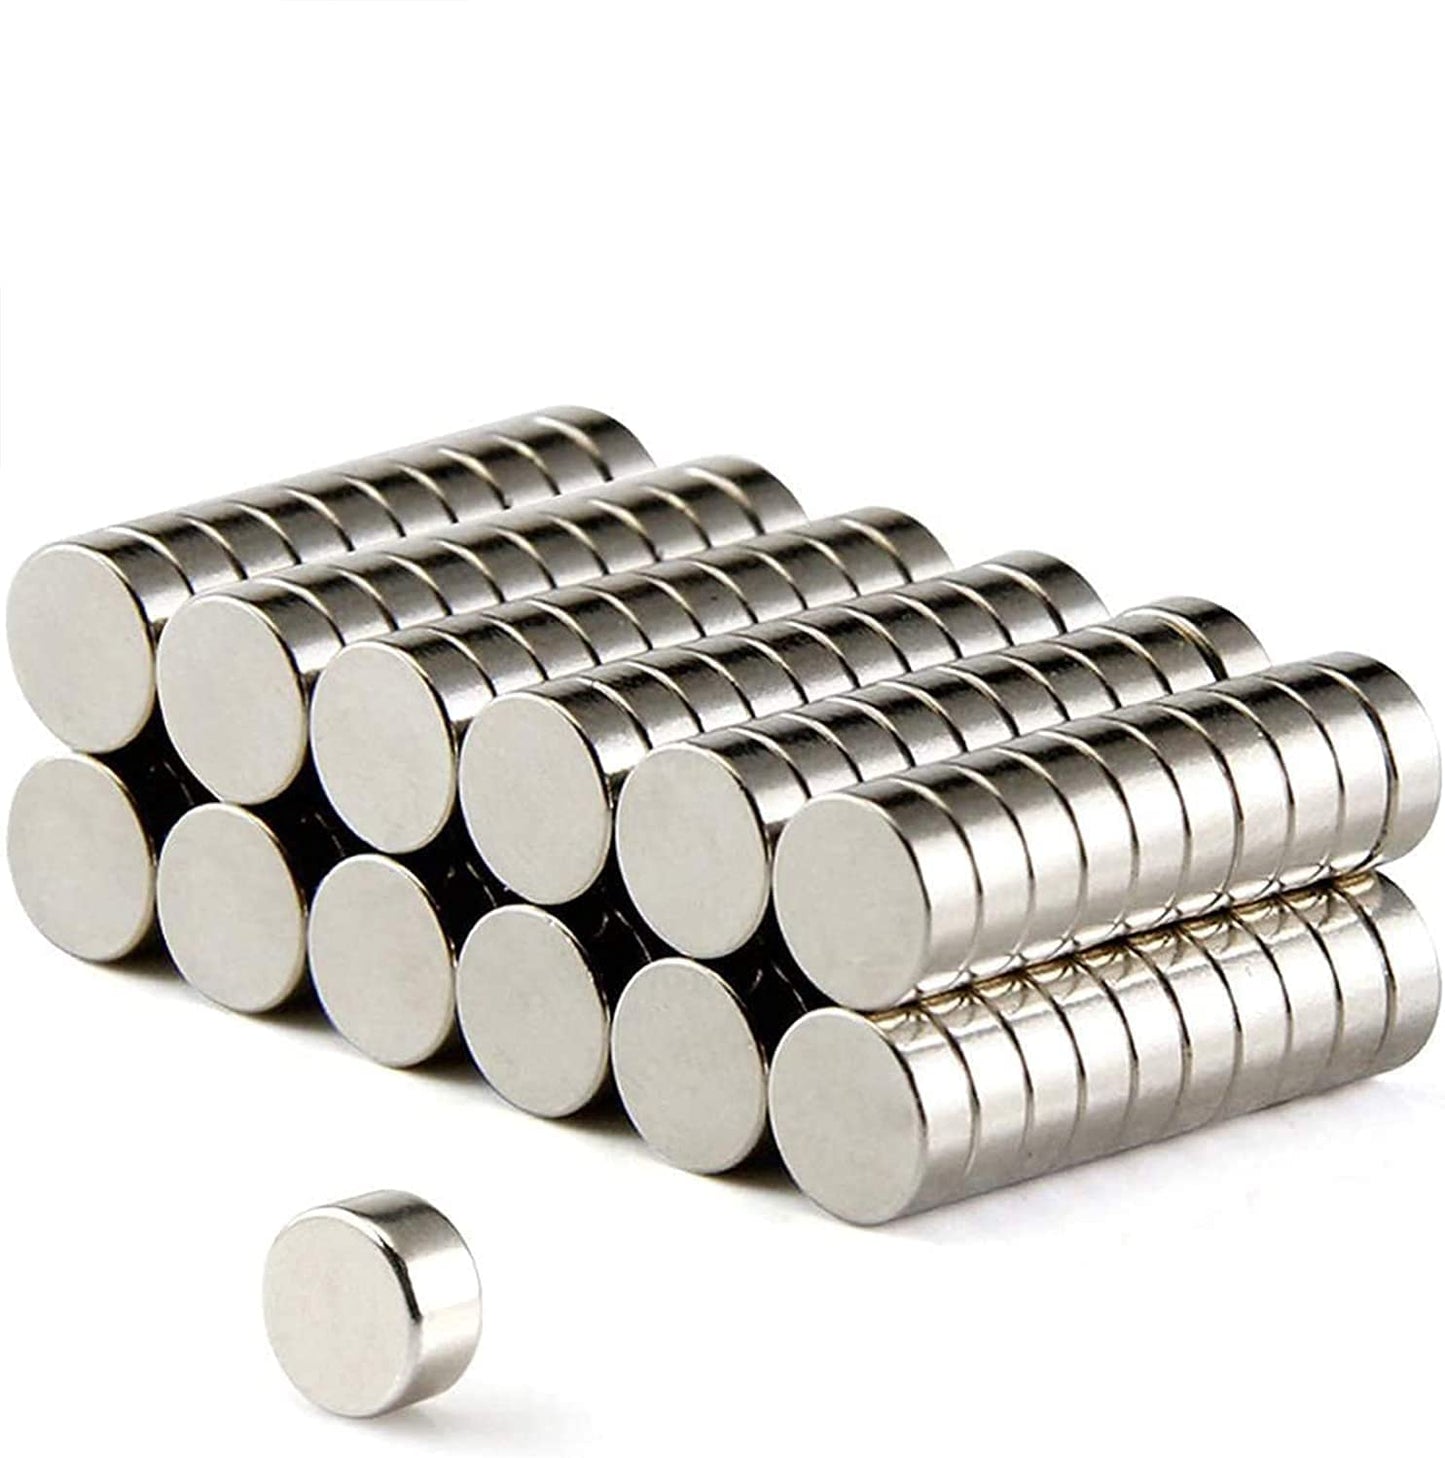 FINDMAG 50 Pcs 6 x 2 mm Fridge Magnets, Premium Brushed Nickel Refrigerator Magnets, Magnets for Fridge, Magnets for Whiteboard, Magnets for Crafts, Small Magnets, Mini Magnets, Office Magnets - (For 12 piece(s))